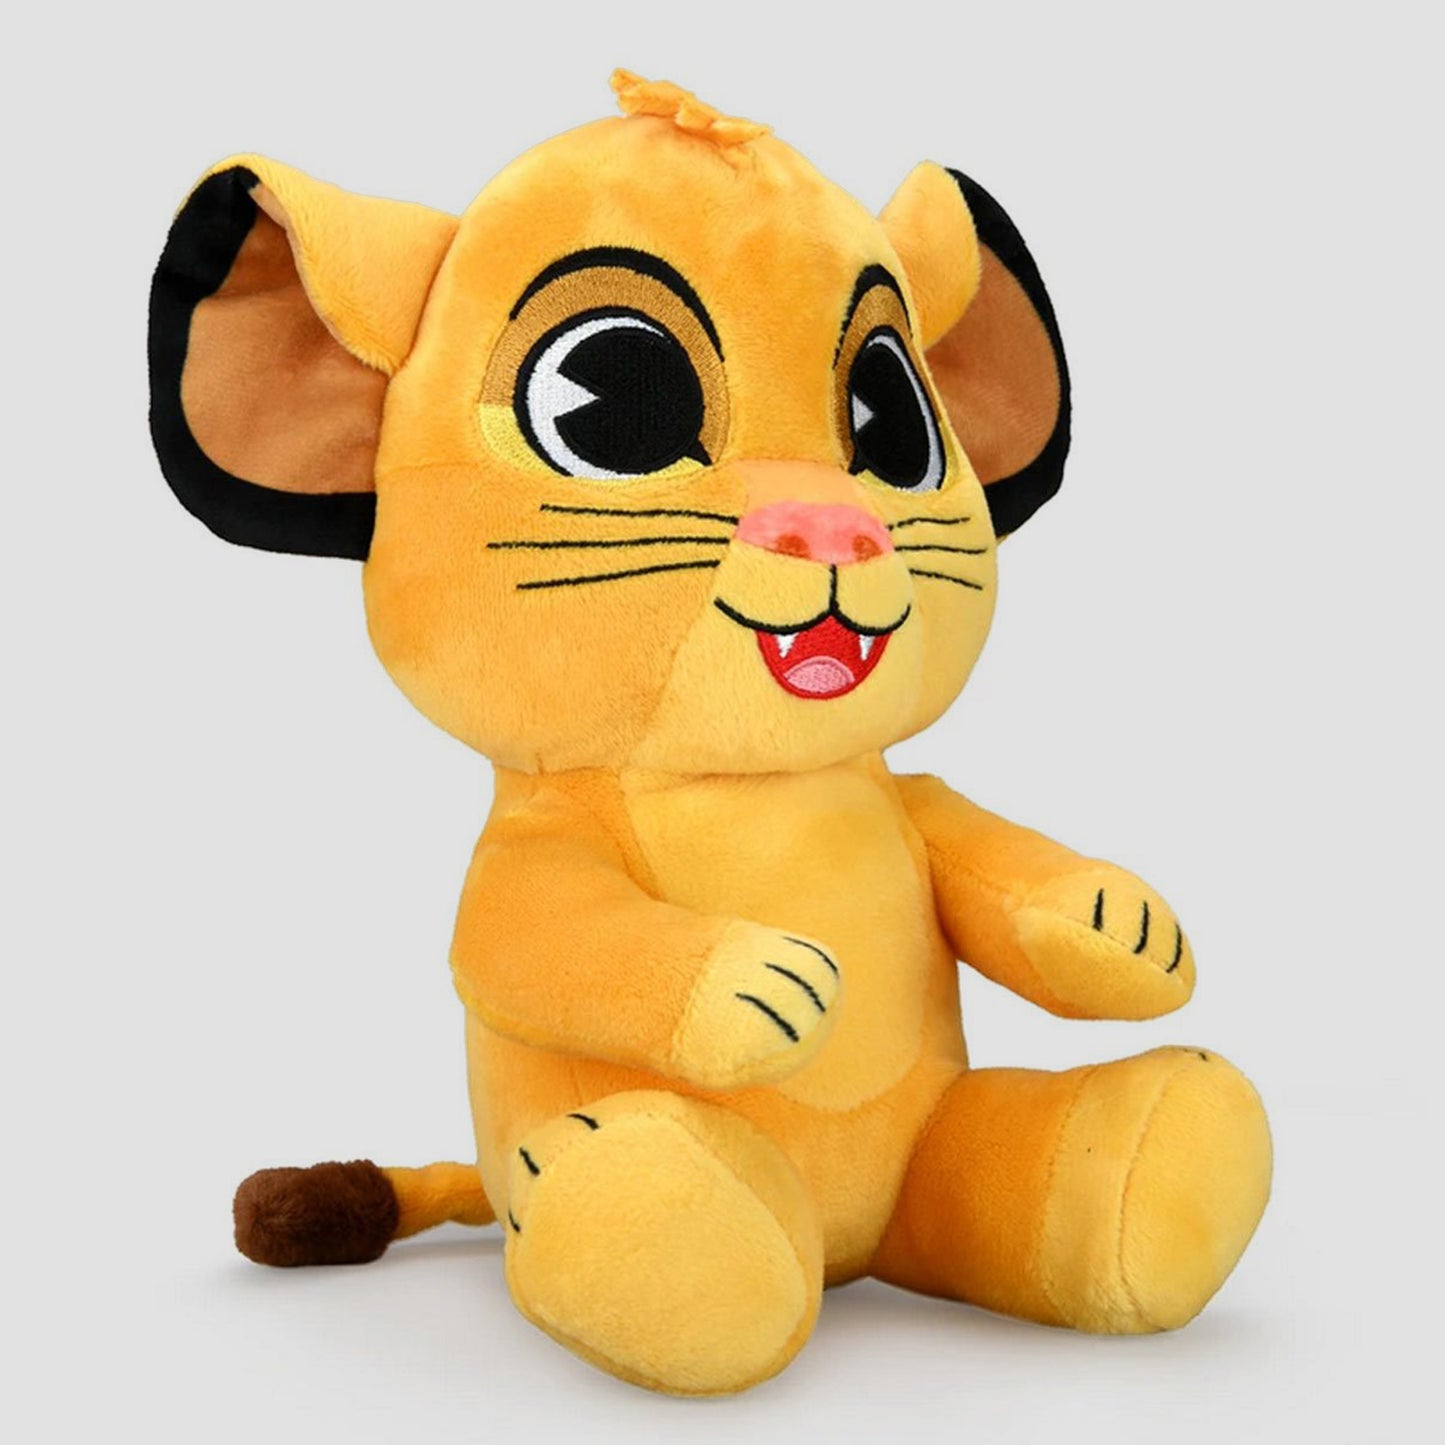 Young Simba (The Lion King) Disney 8" Phunny Plush